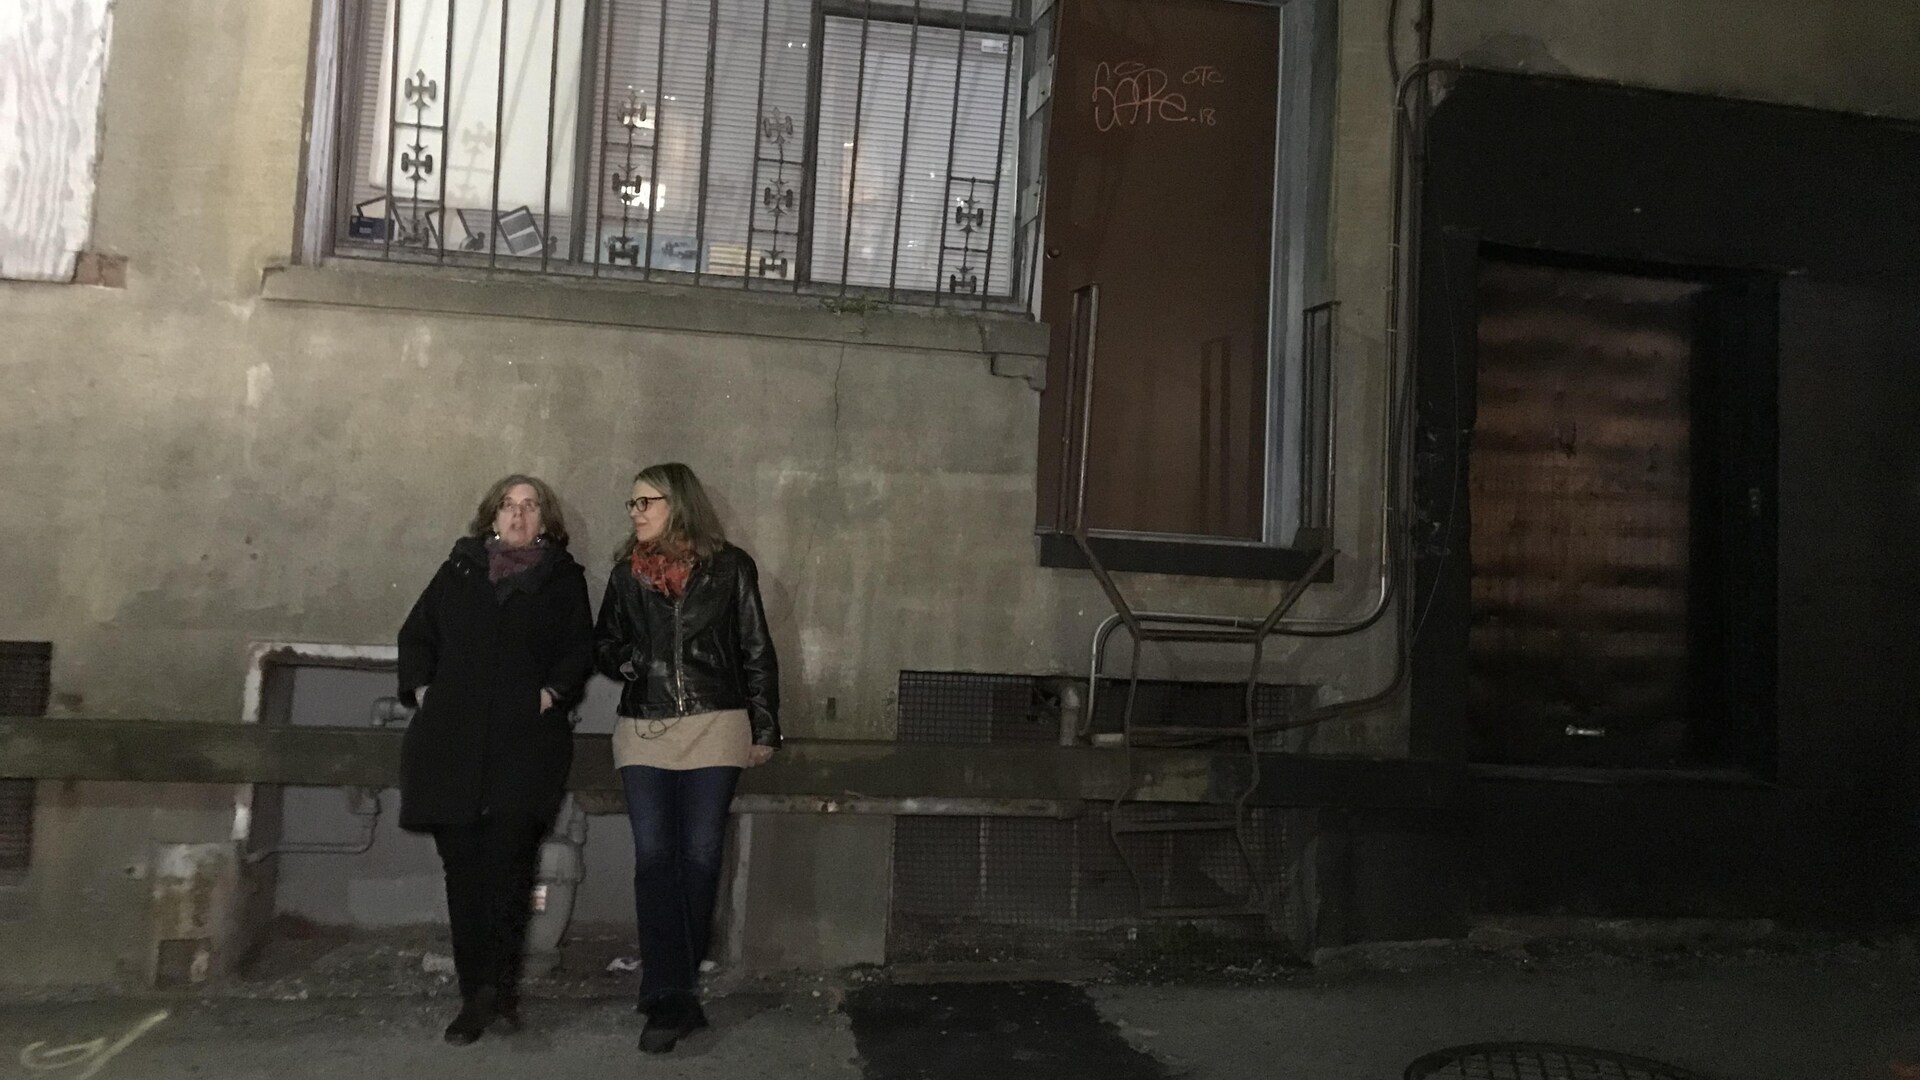 Deux femmes adossées sur le mur d'un immeuble dans une ruelle, sous une fenêtre grillagée éclairée.